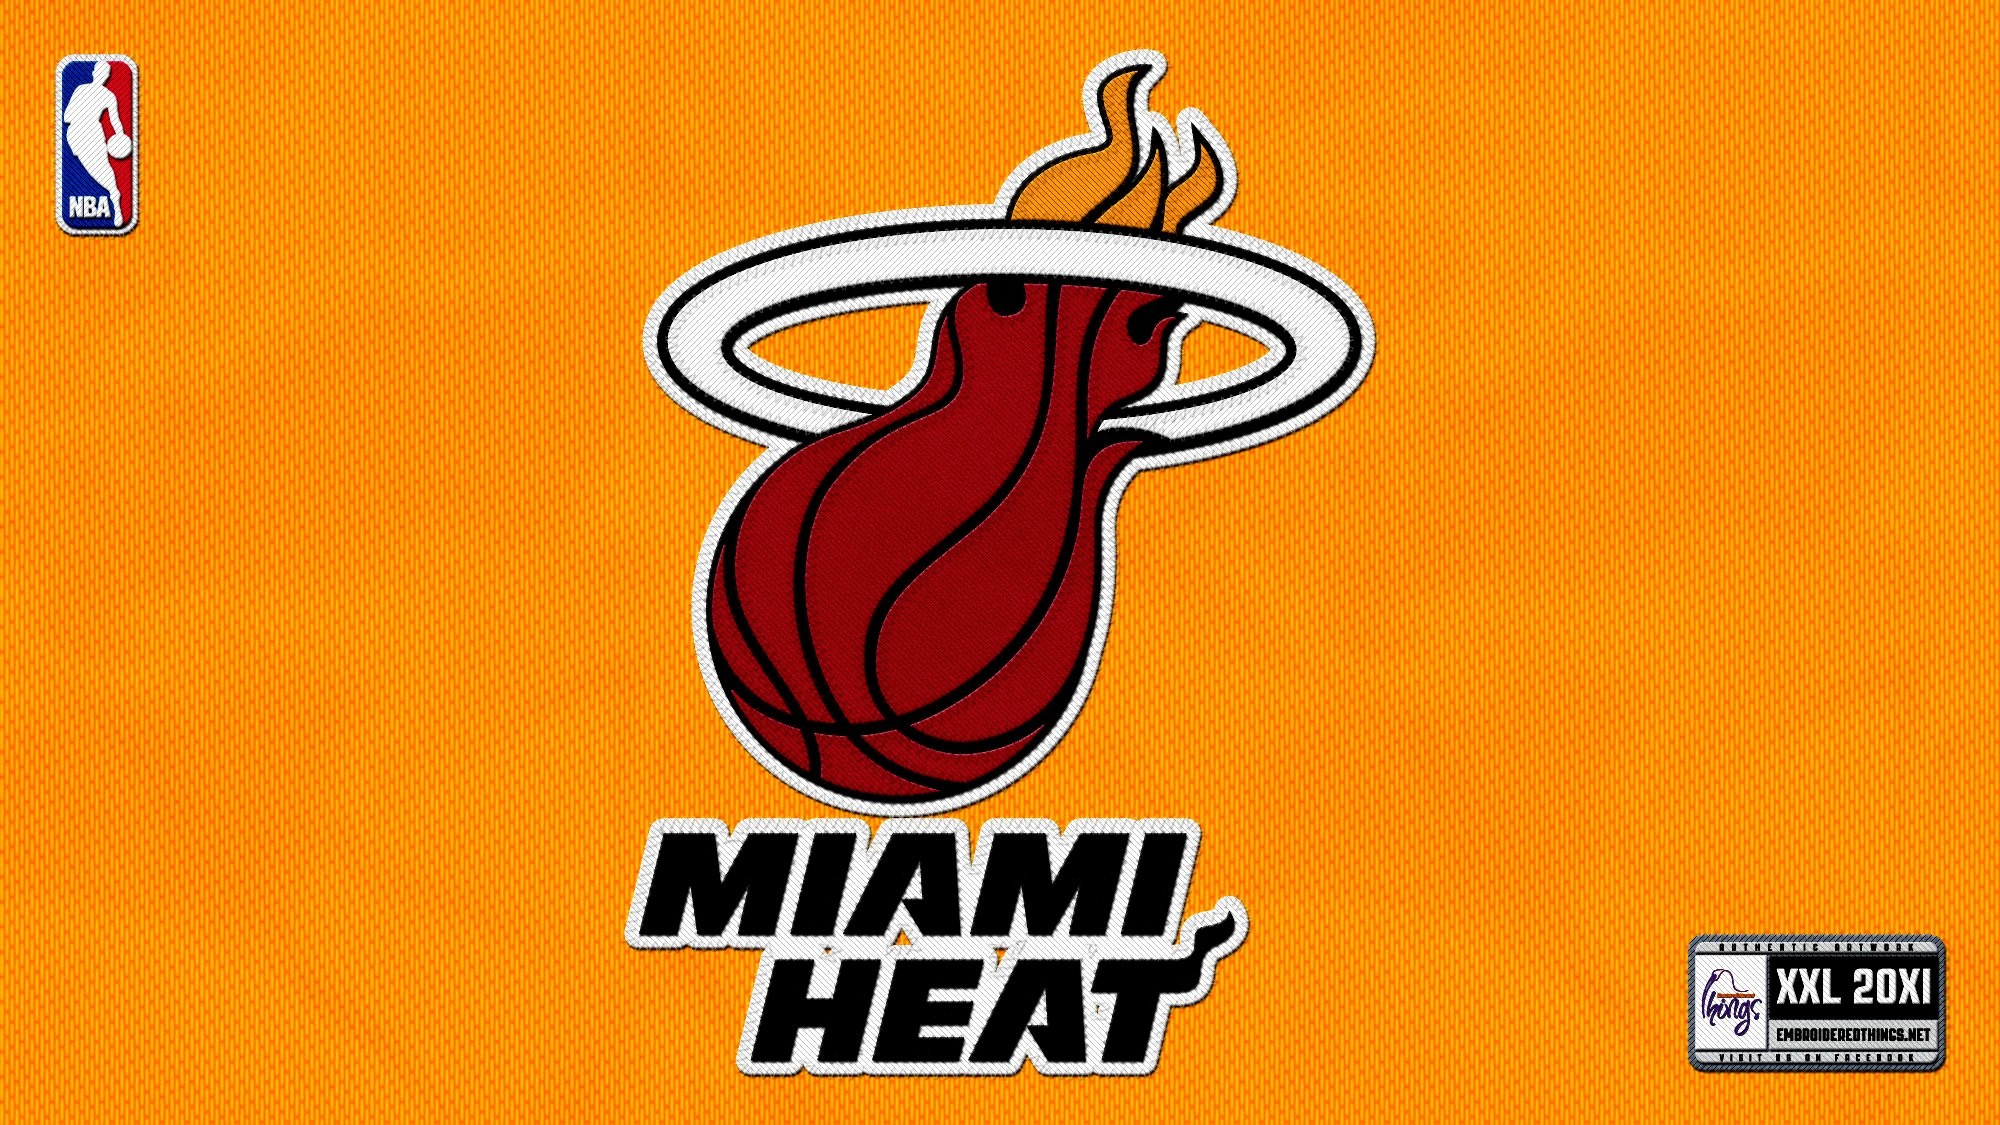 2000x1125 Miami Heat NBA Backgrounds HD Widescreen1